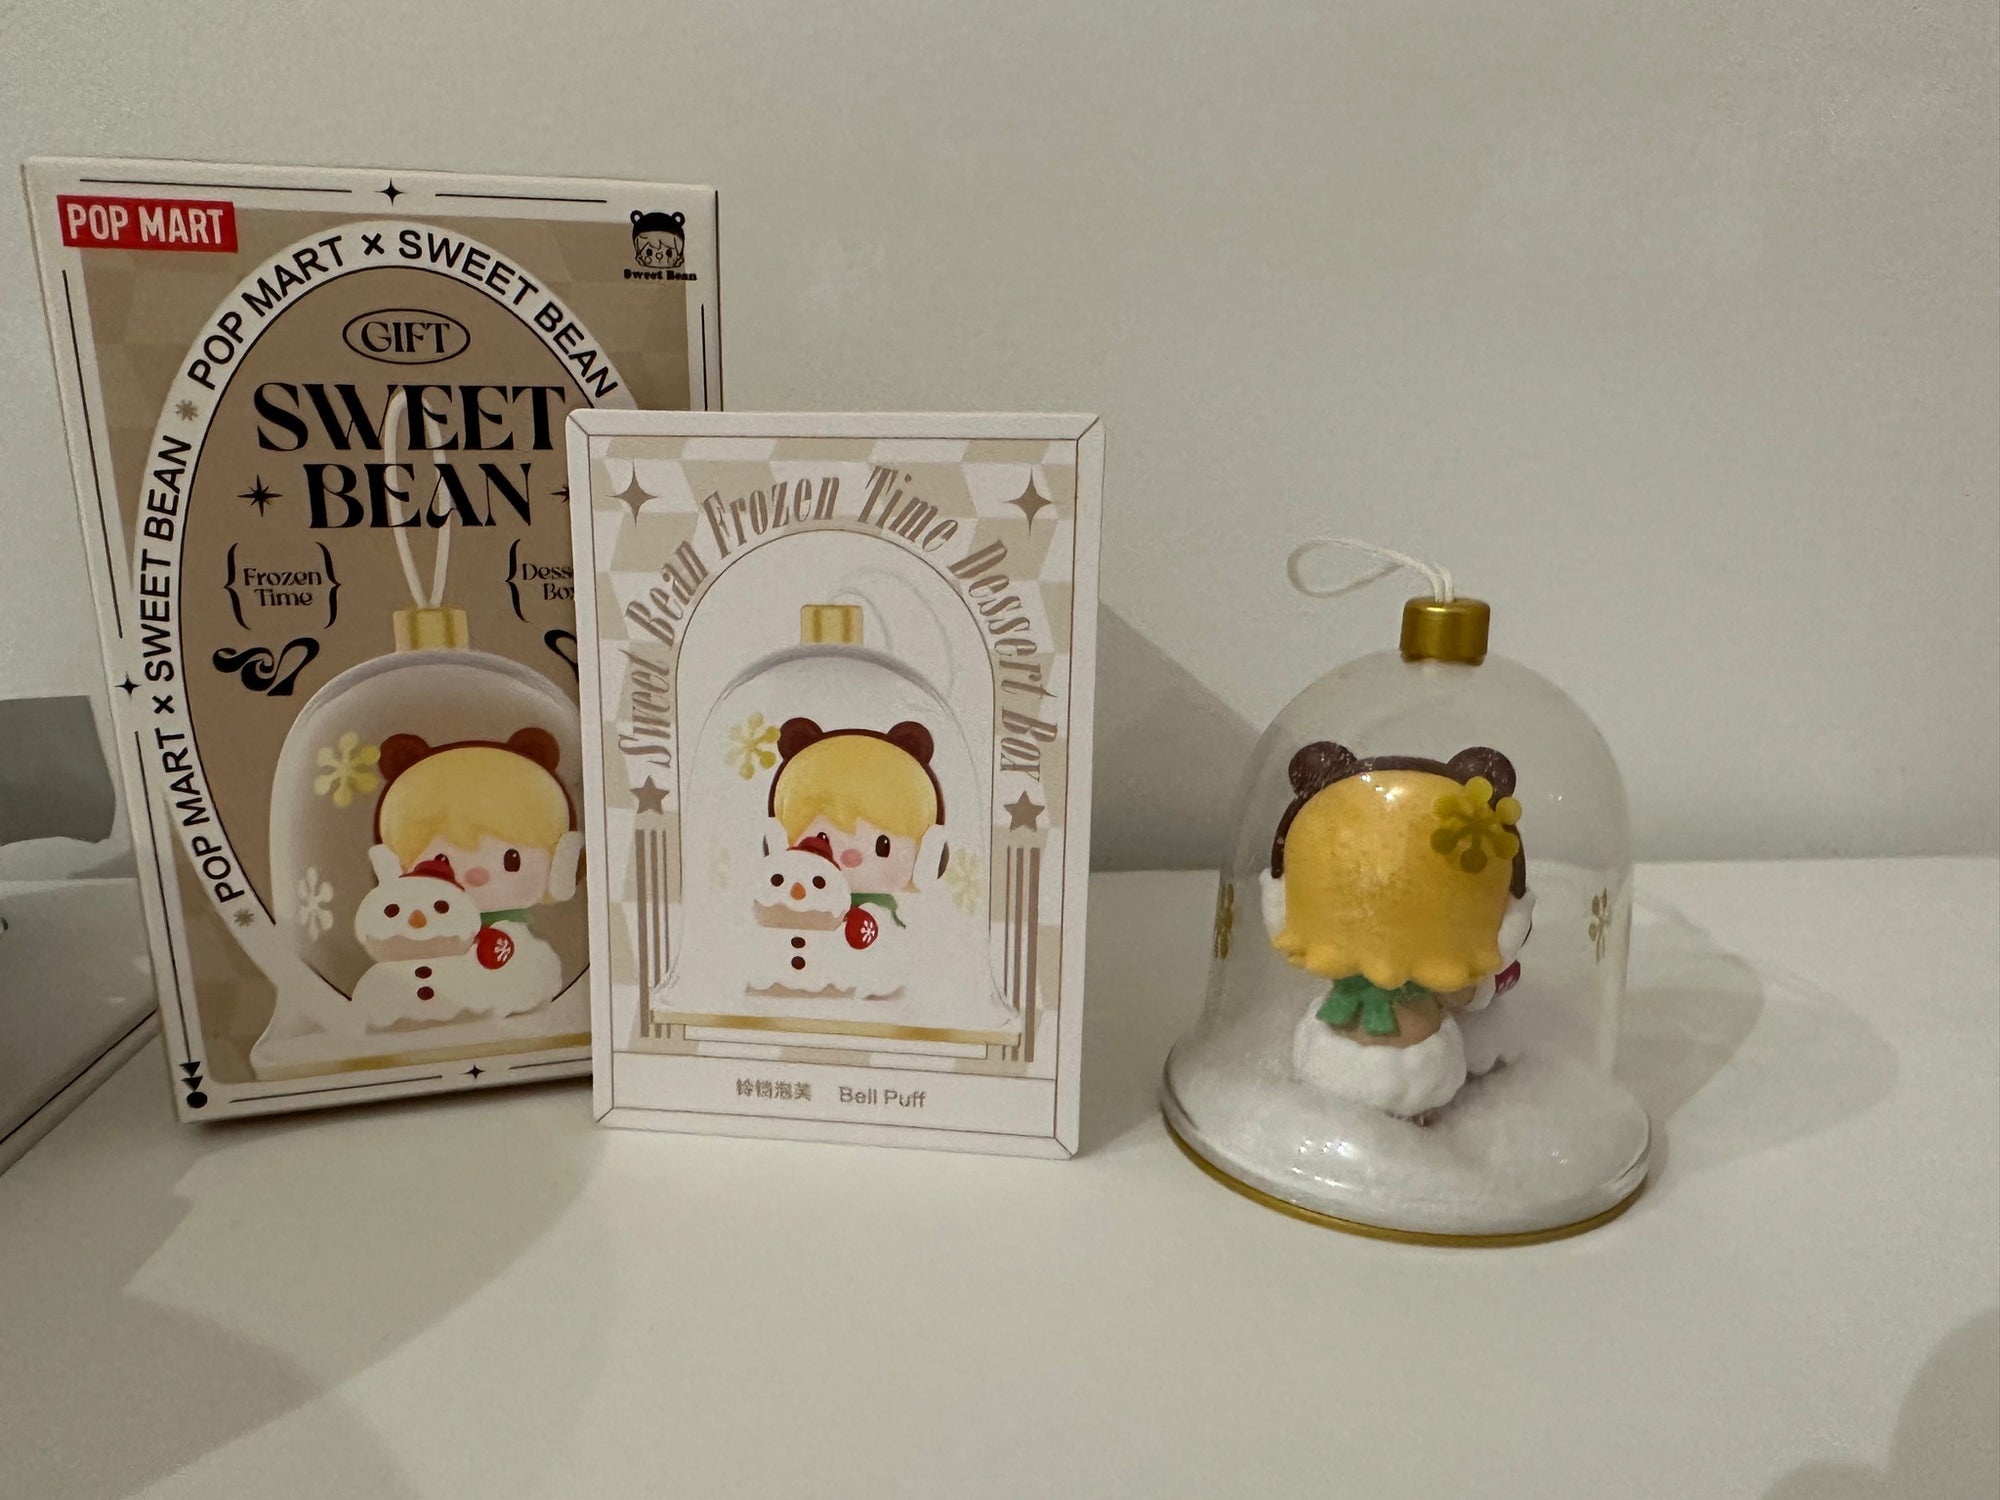 Sweet Bean Bell Puff - Sweet Bean Frozen Time Dessert Blind Box Figures by POP MART - 1